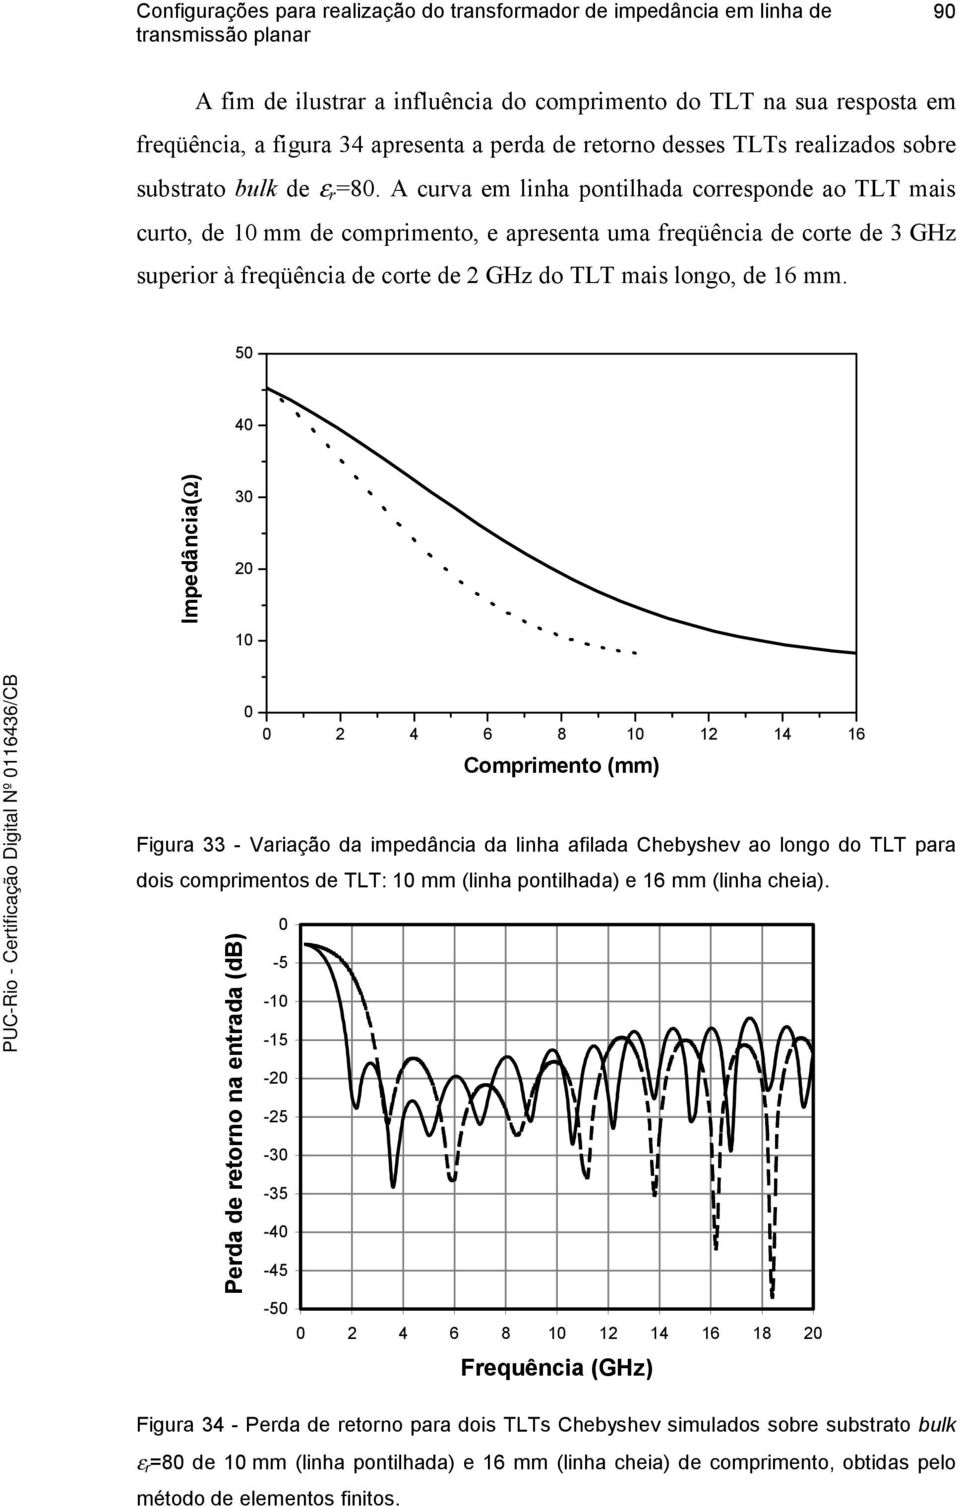 5 4 Impedância(Ω) 3 2 1 2 4 6 8 1 12 14 16 Comprimento (mm) Figura 33 - Variação da impedância da linha afilada Chebyshev ao longo do TLT para dois comprimentos de TLT: 1 mm (linha pontilhada) e 16